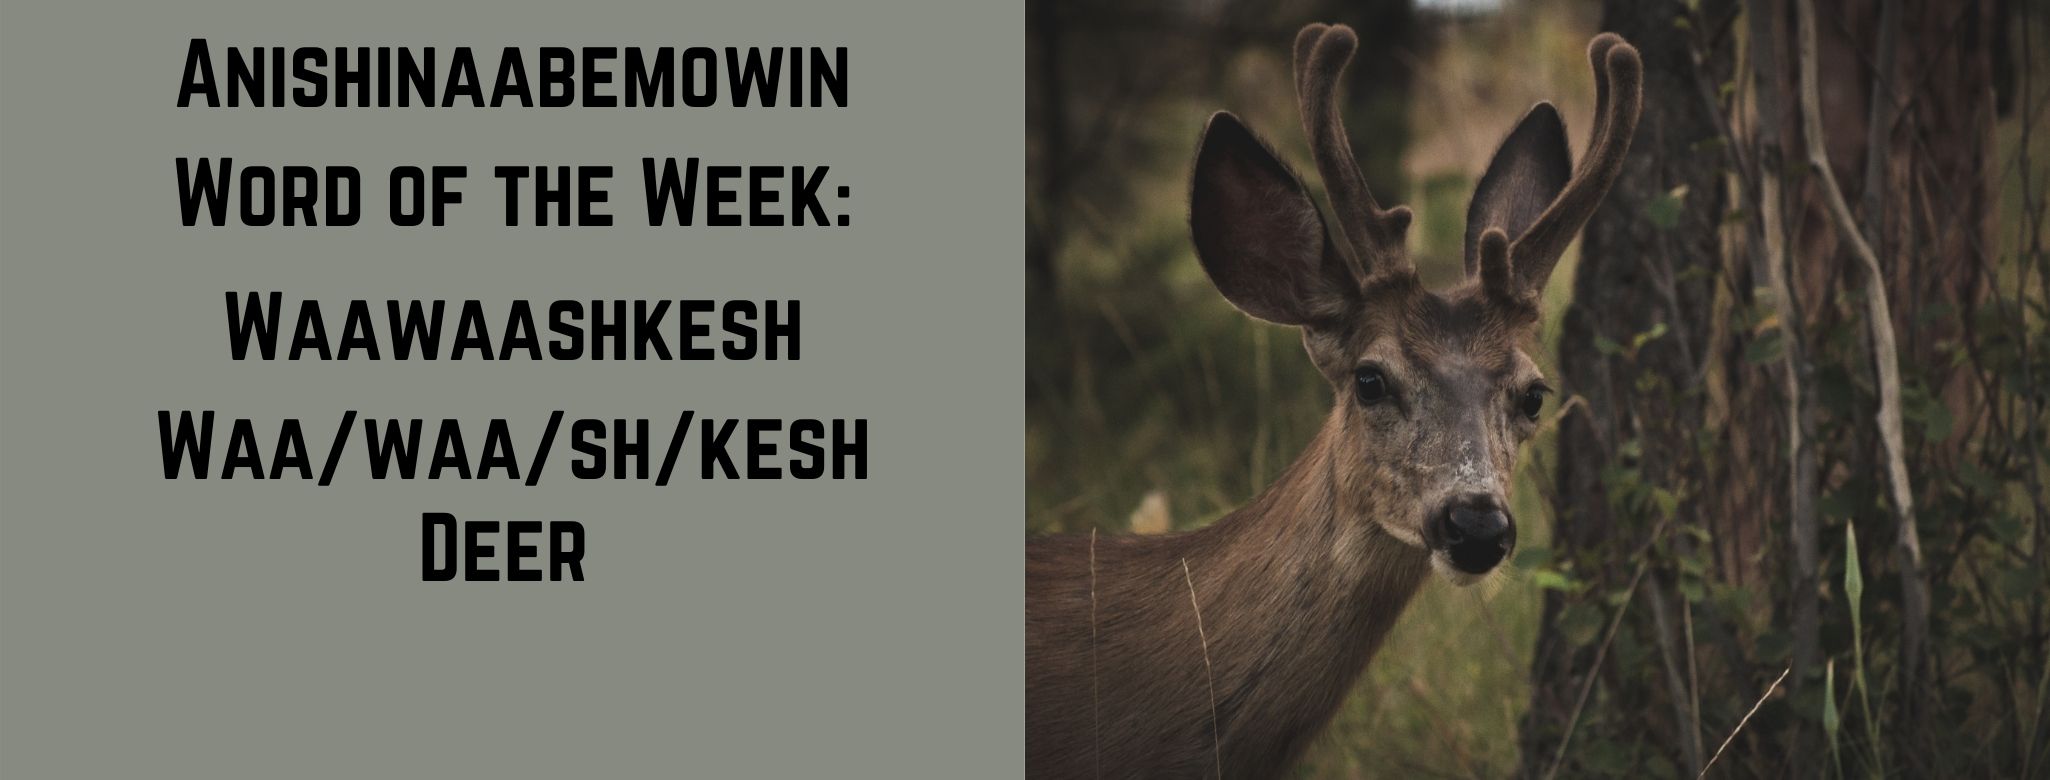 Anishinaabemowin word of the week Waawaashkesh Deer